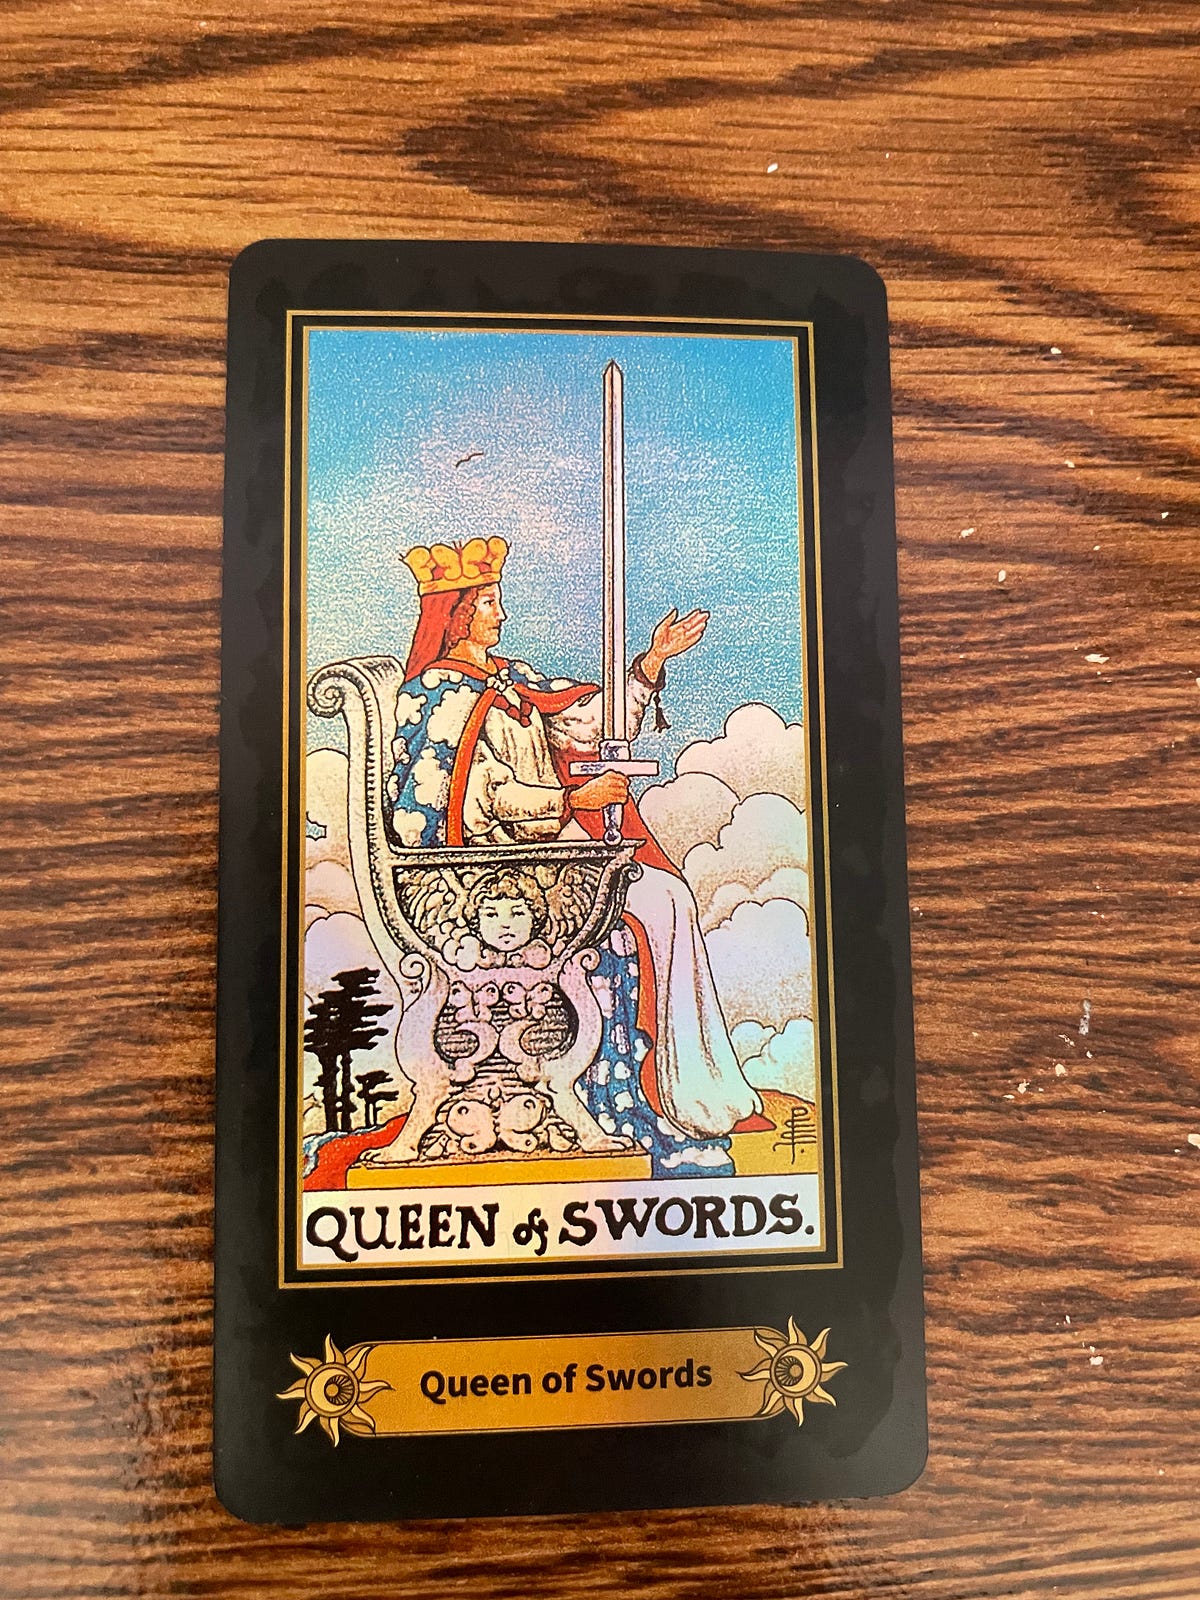 Mundtlig komplikationer Slægtsforskning Why I Love The Queen of Swords Tarot Card | by Miriam Rachel | Modern Women  | Medium